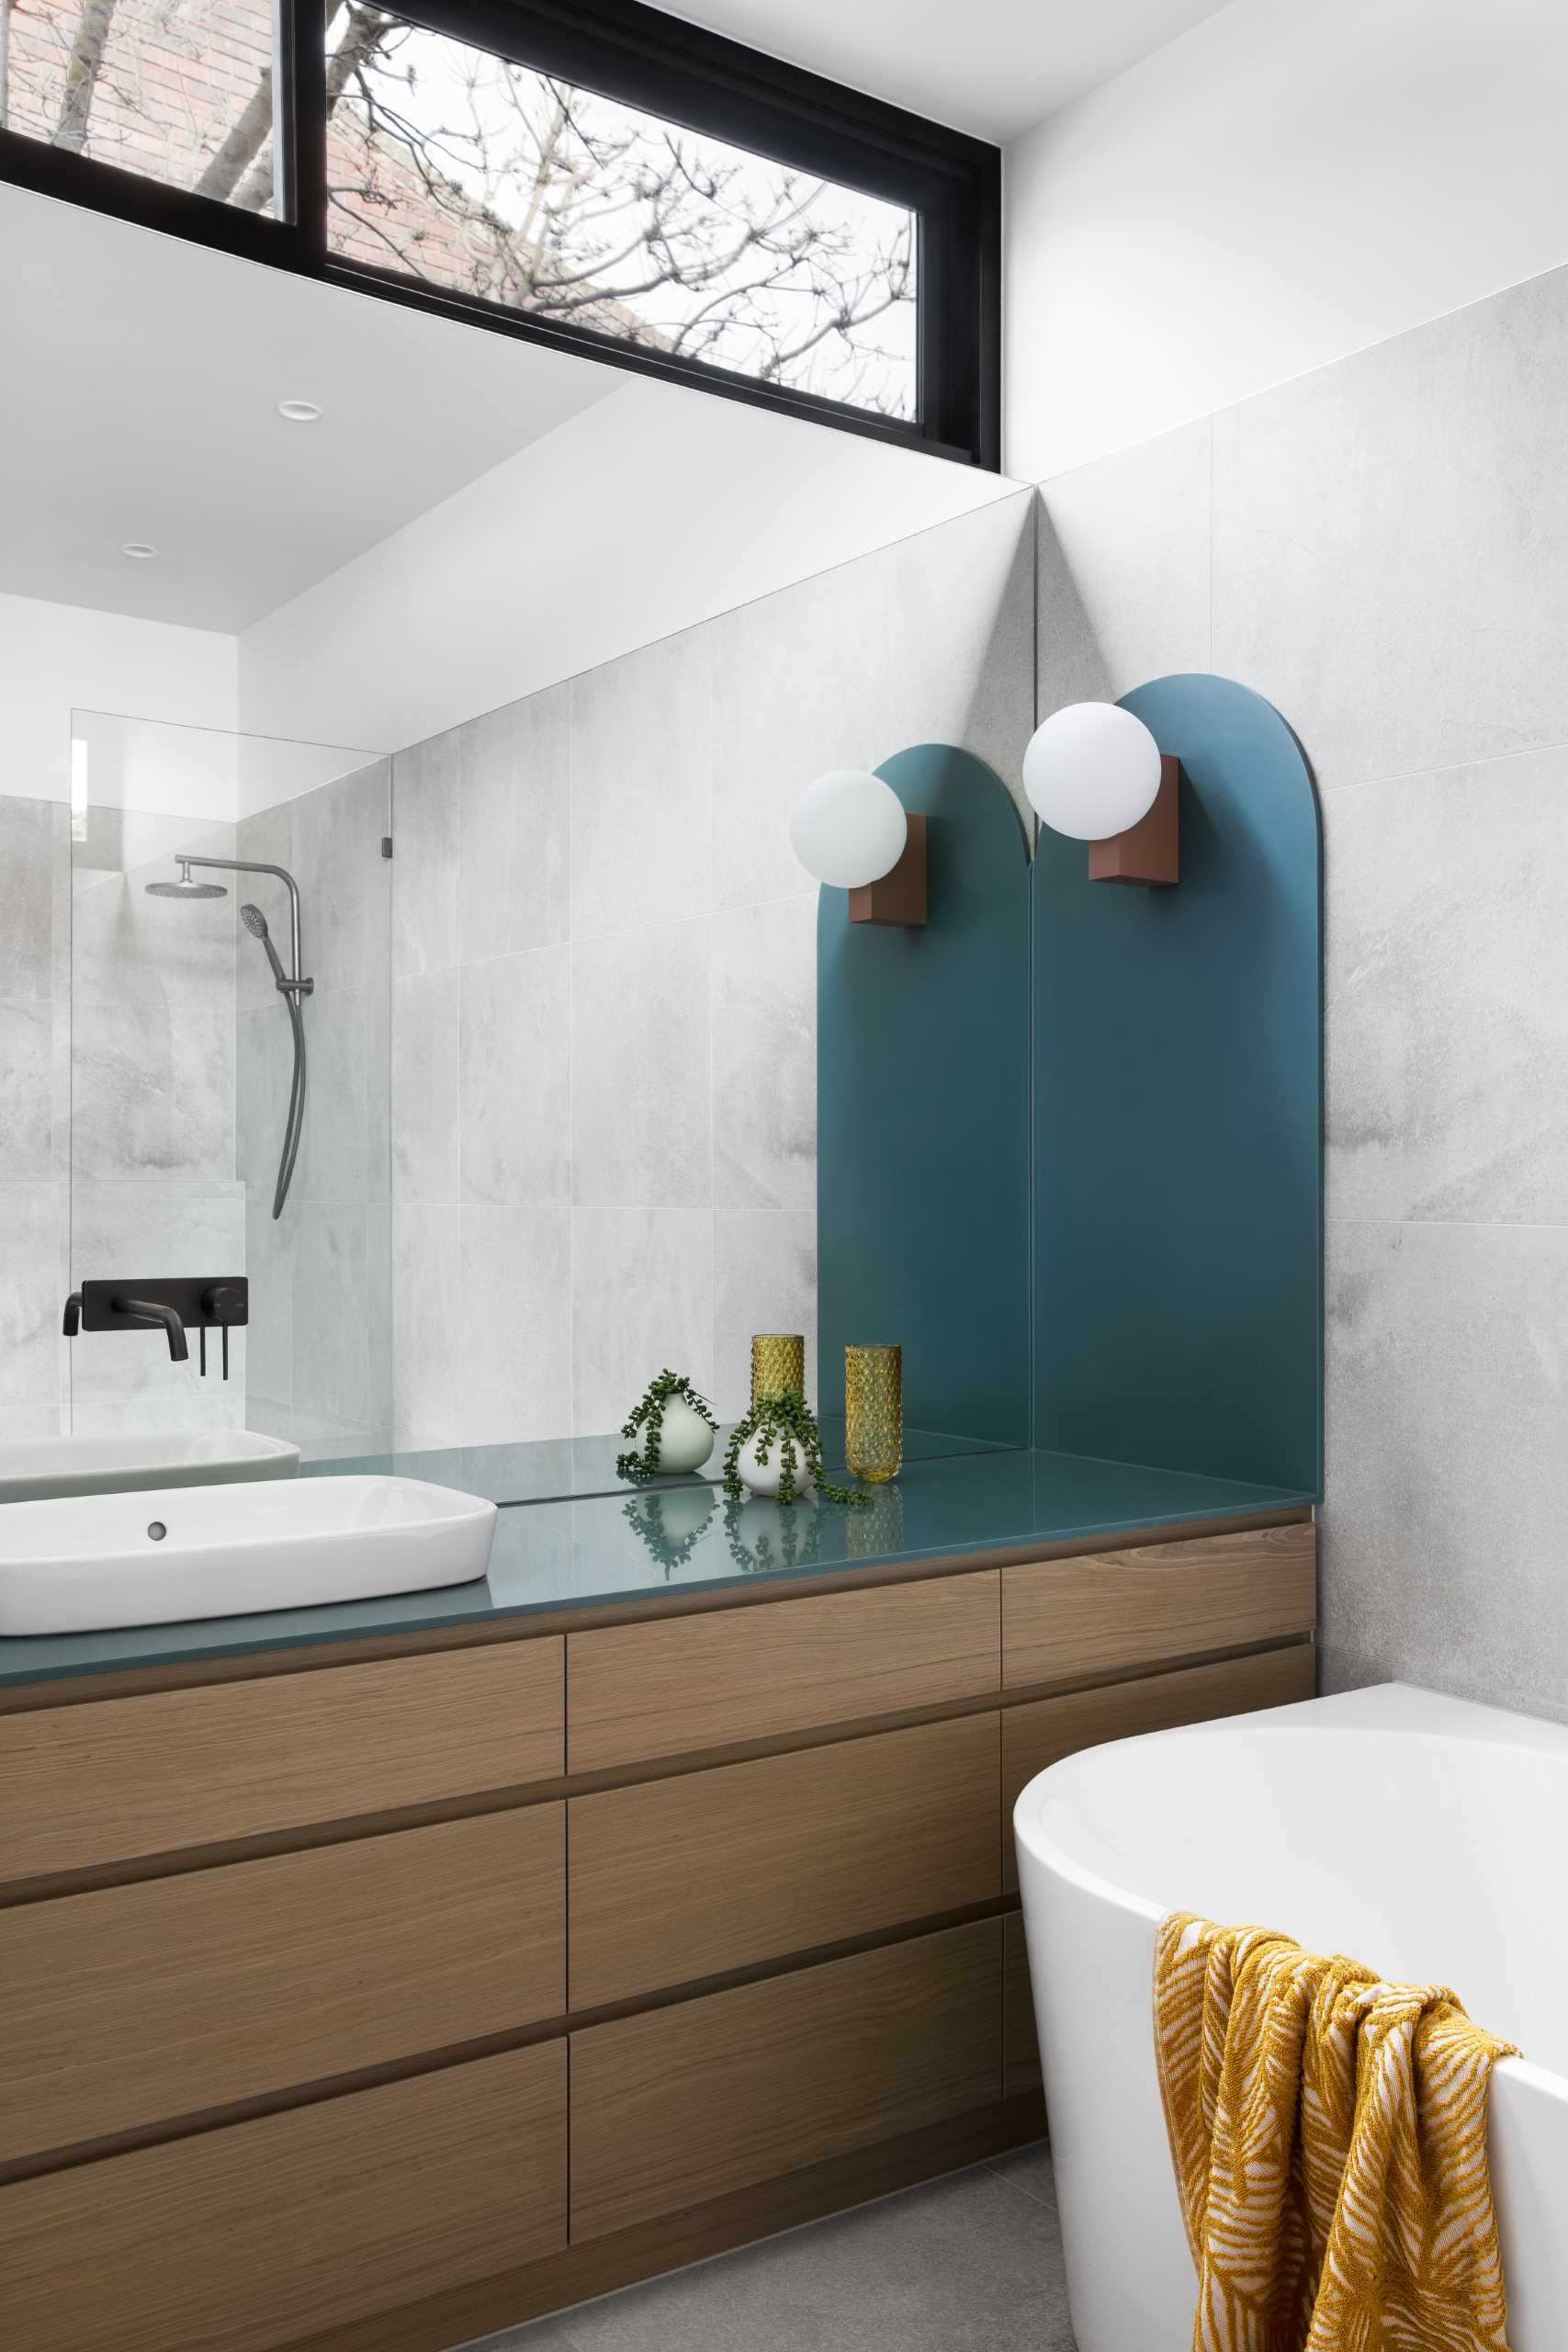 یک حمام مدرن با یک آینه بزرگ، رومیزی سبز رنگ، روشویی چوبی، و دوش.